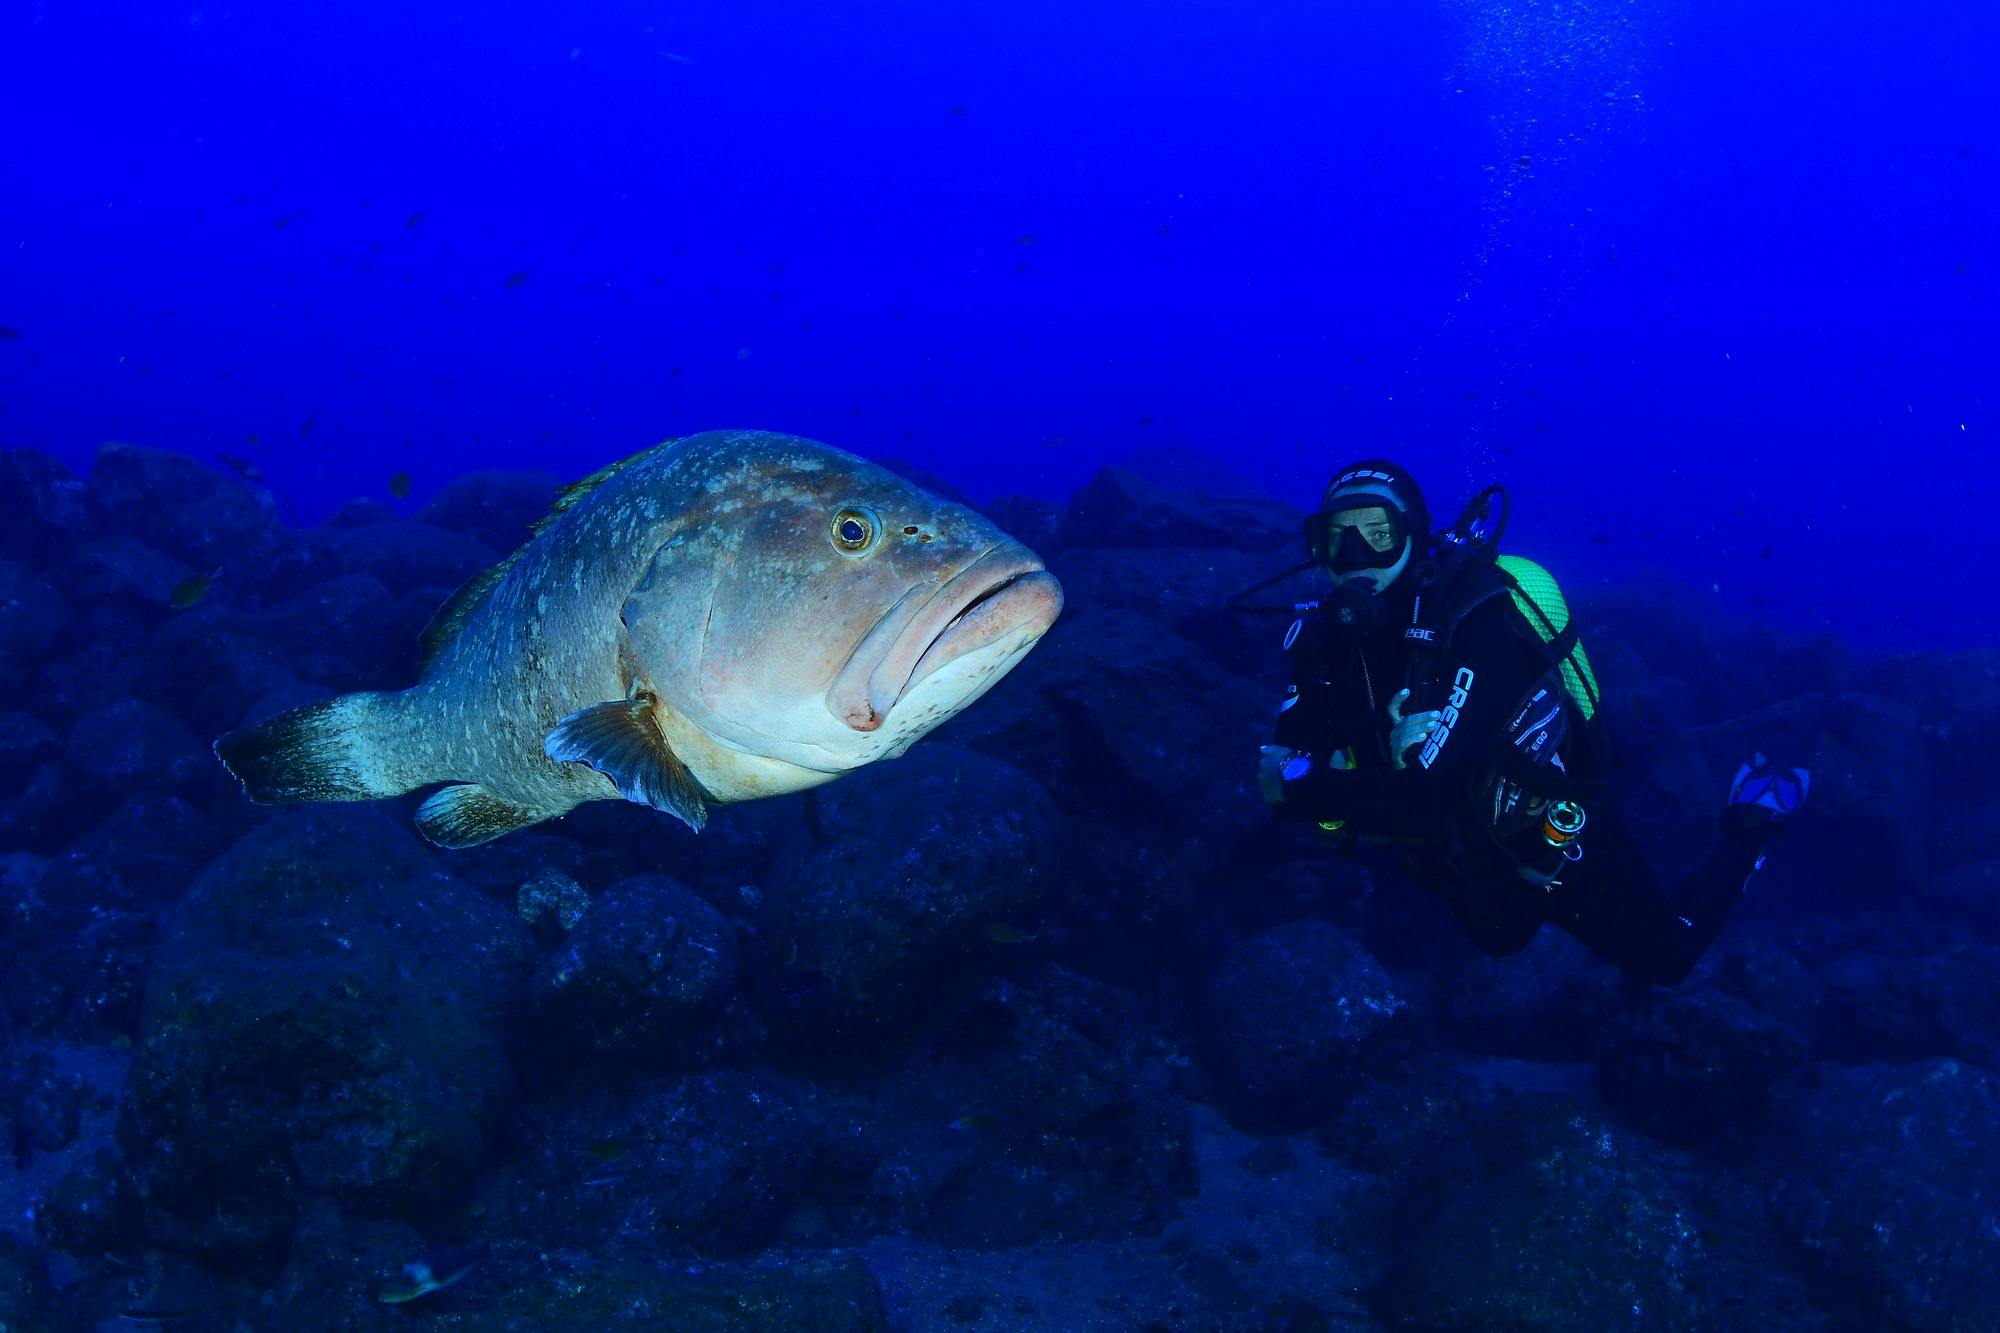 Scuba Diving in Formigas & Dollabarat Reef in São Miguel